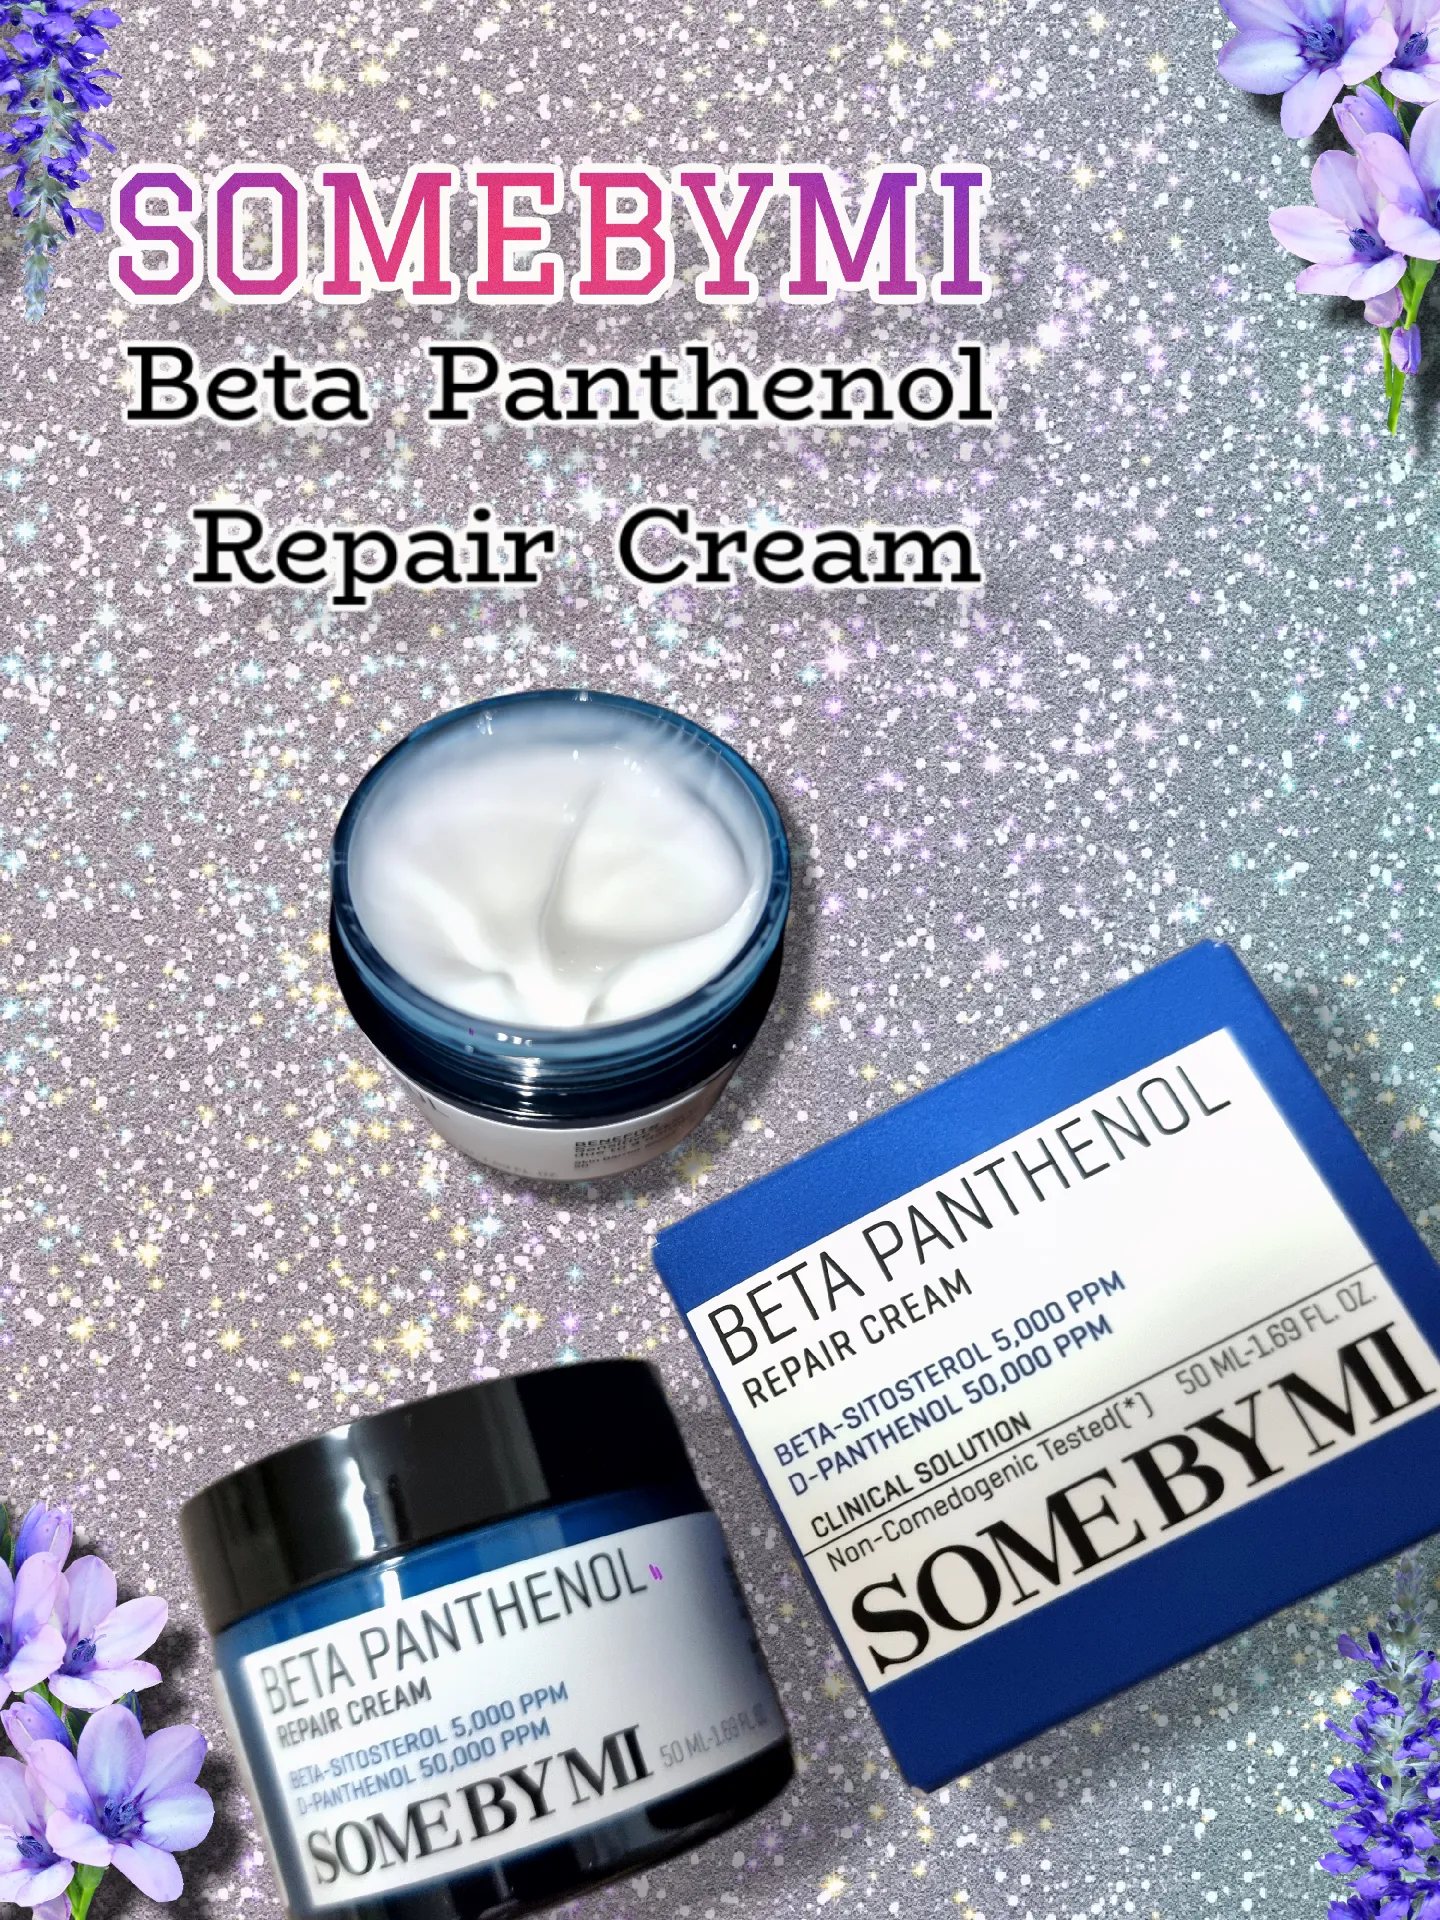 SOME BY MI Renewed Beta-Panthenol Repair Serum - 1.01Oz, 30ml – Rebuilding  Skin Barrier with Beta-Sitosterol and Panthenol – Daily Face Serum for Skin